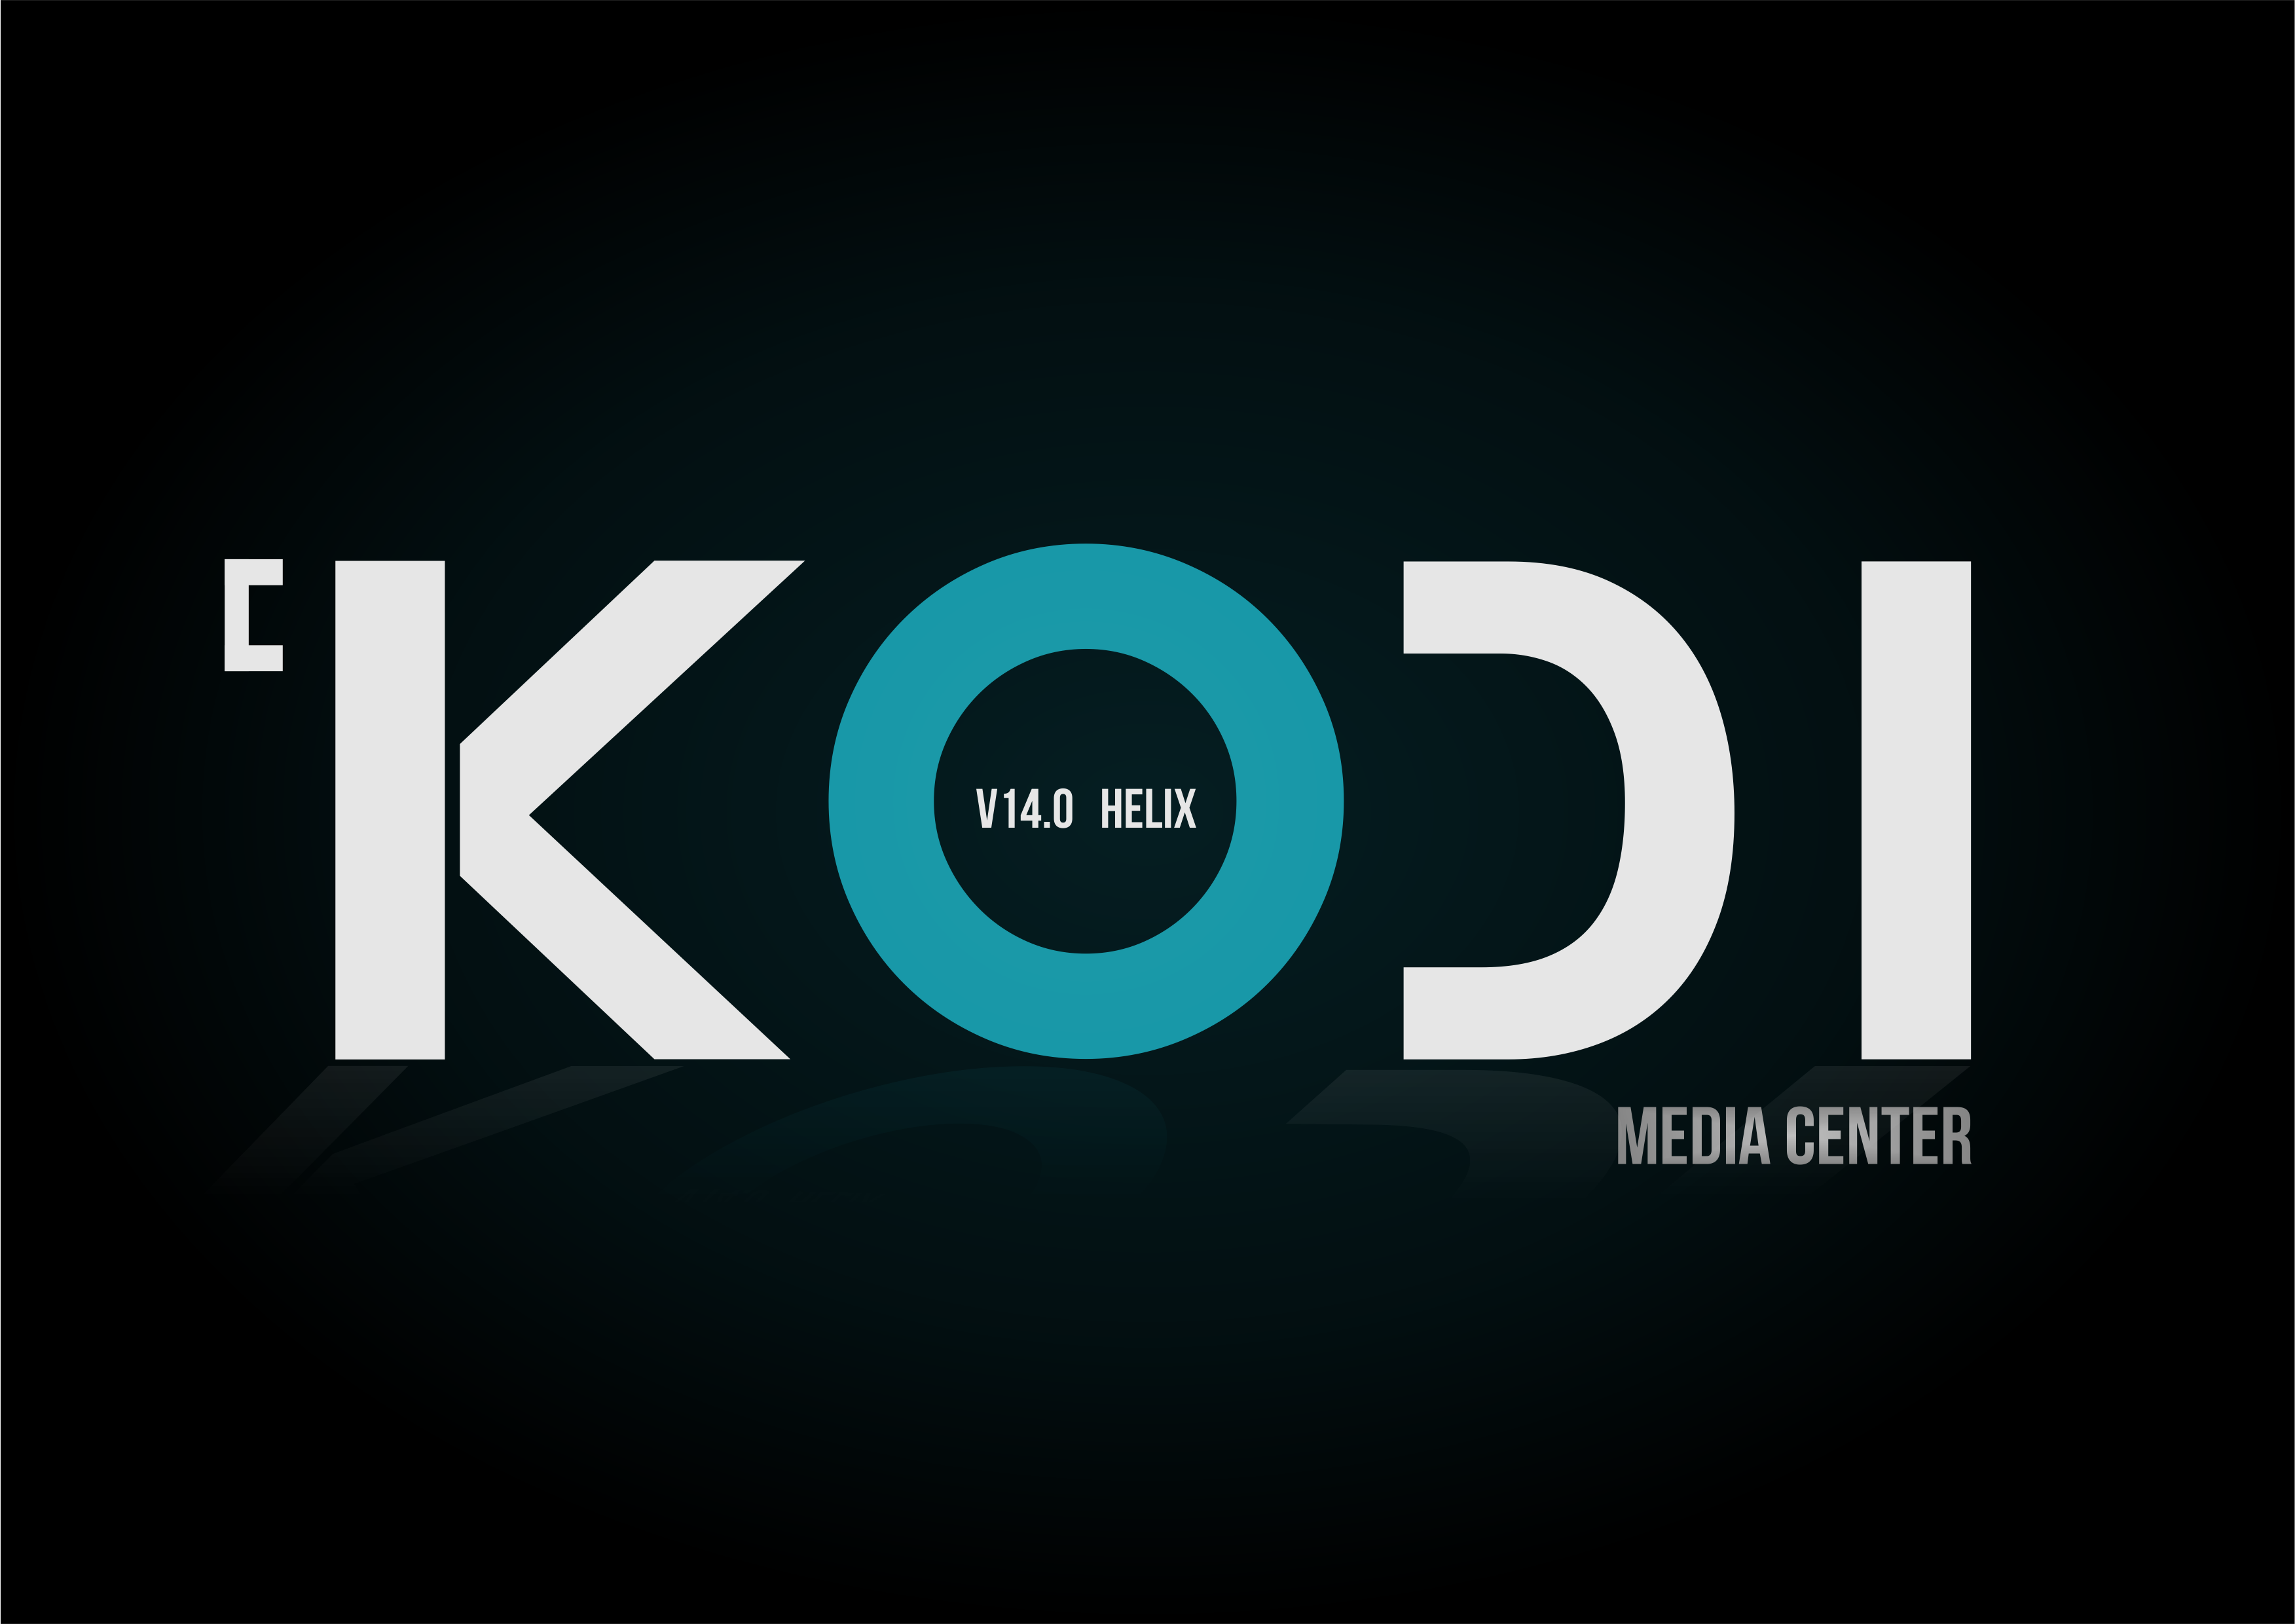 Re Kodi Logo Suggestions And Ideas Paulodanfsousa